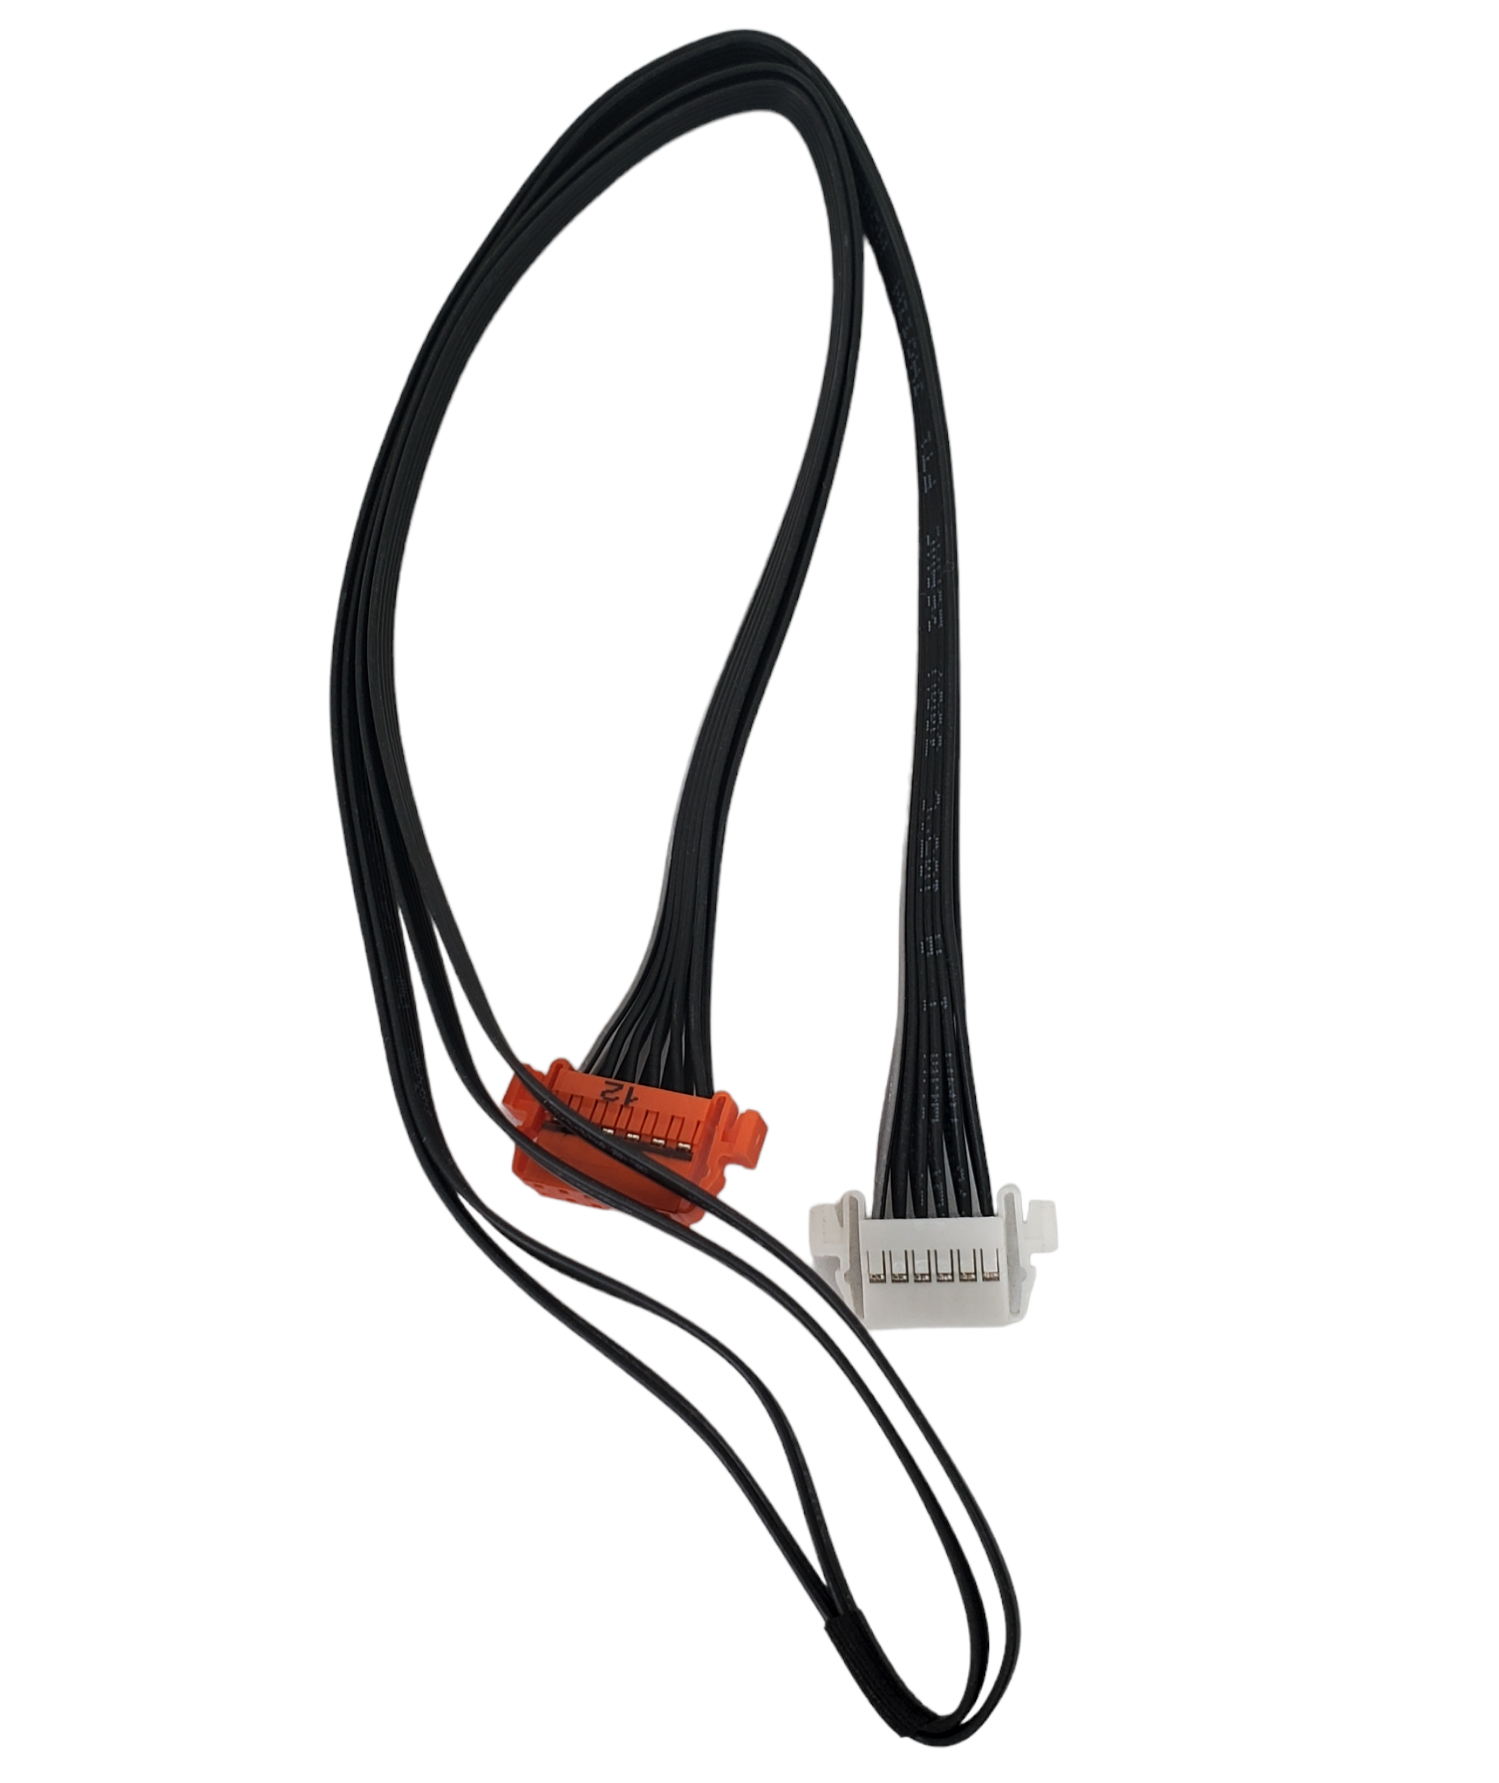 kit Flex, cable de alimentación y modulo de encendido Samsung UN50TU8000FXZC